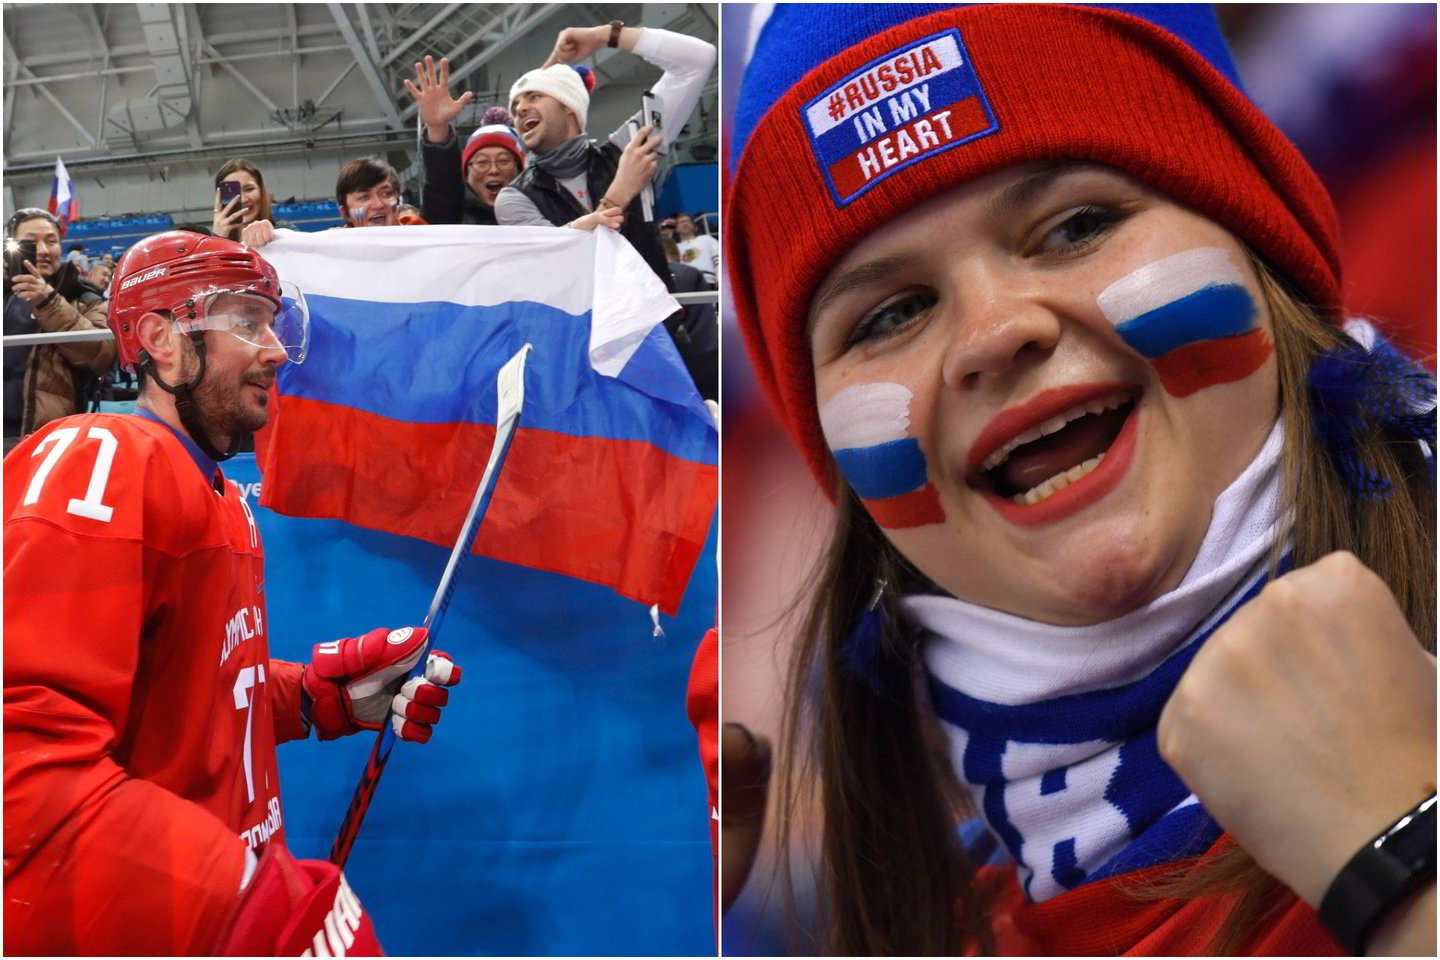  Rusų ledo ritulininkai žaisdami su JAV jautėsi tarsi namuose.<br> AP nuotr.